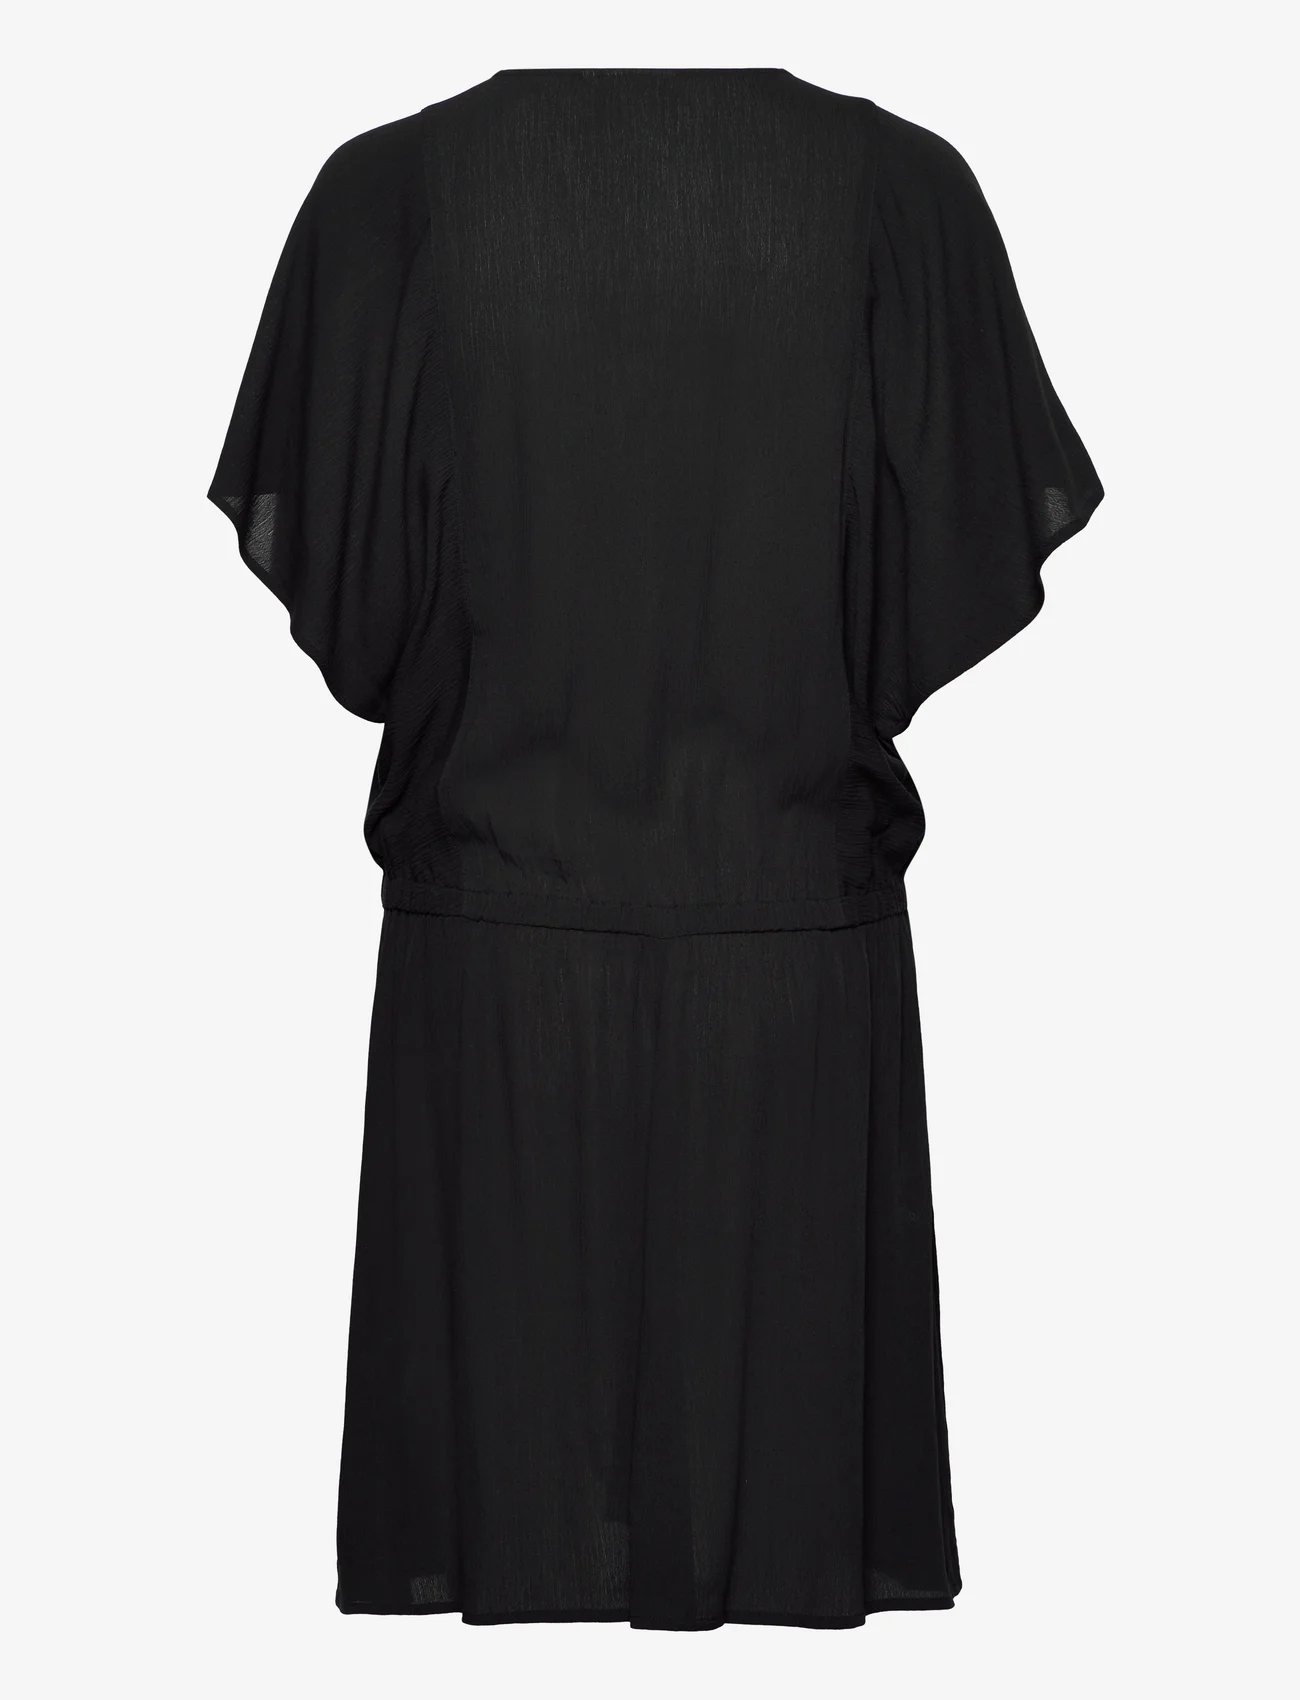 Coster Copenhagen - Dress with smock at waist - korta klänningar - black - 1